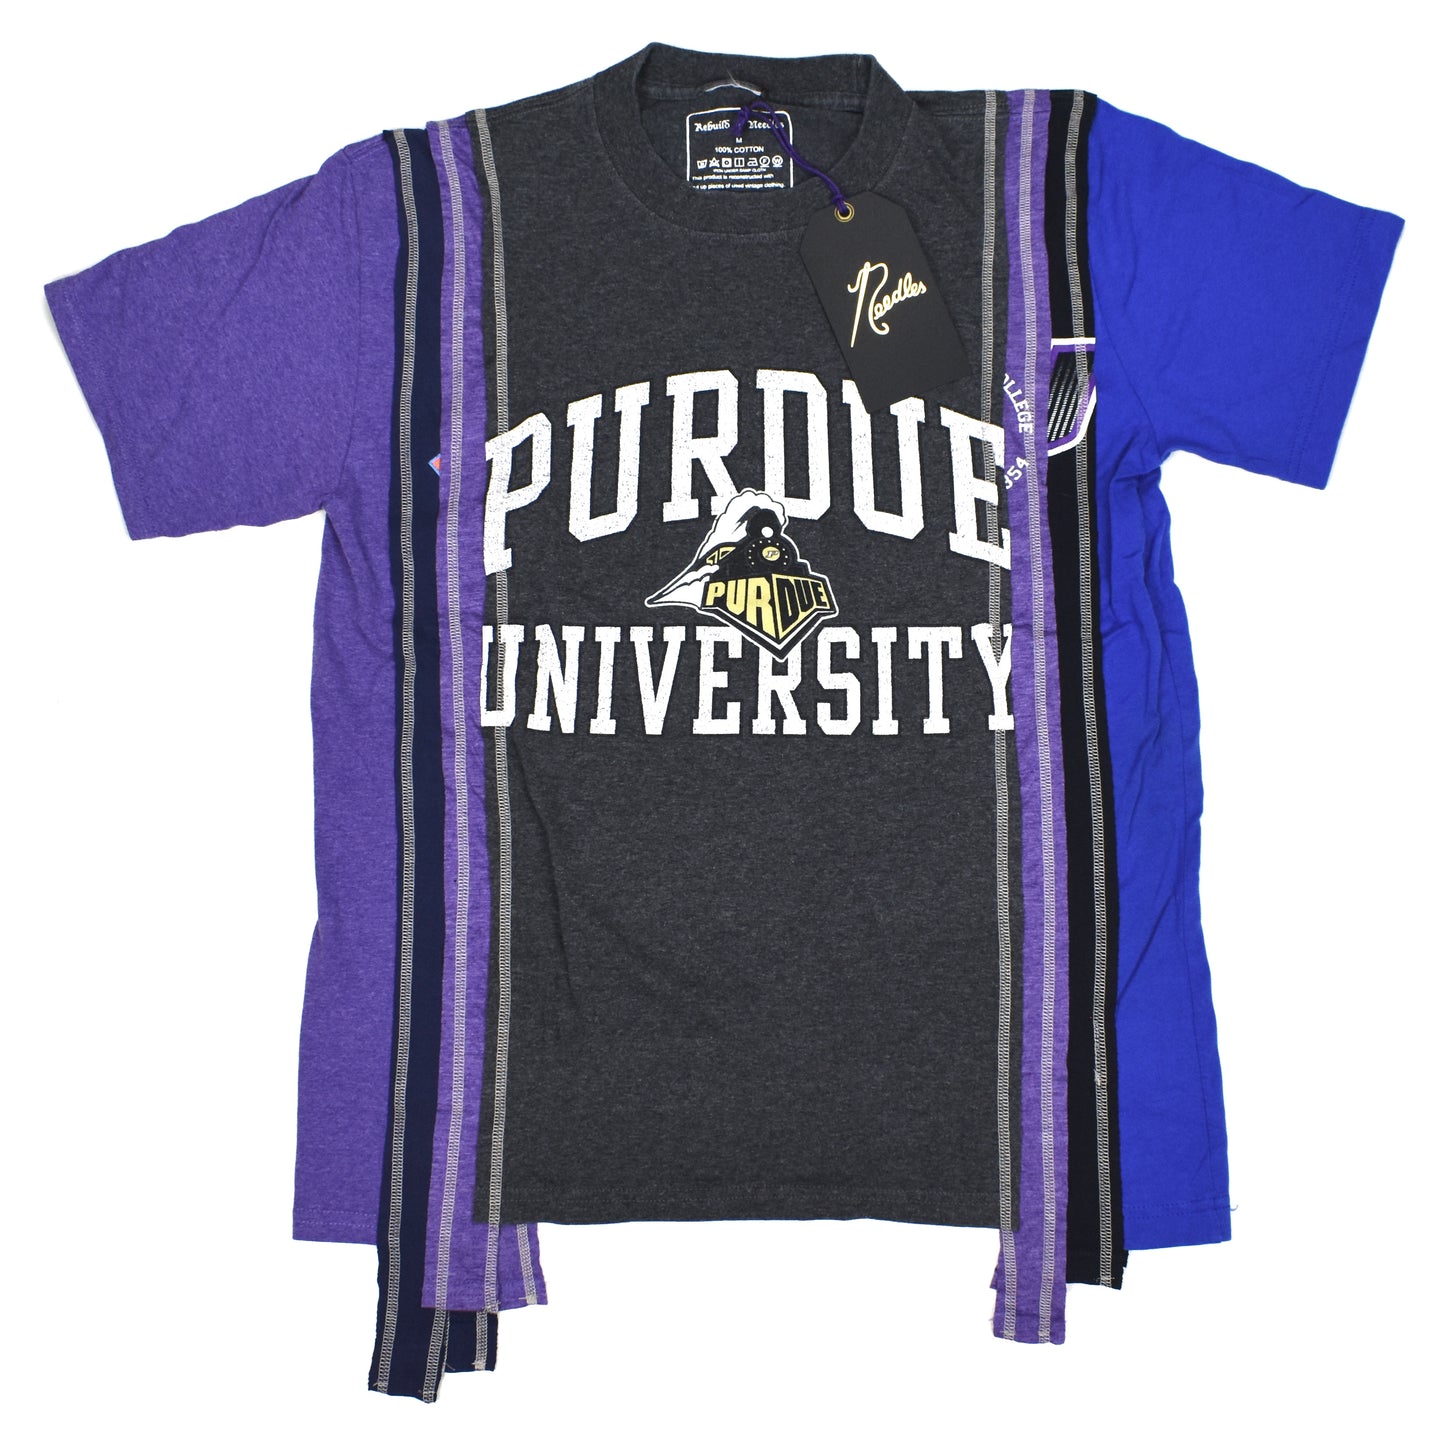 Needles - Rebuild 7 Cuts College T-Shirt (Purdue)